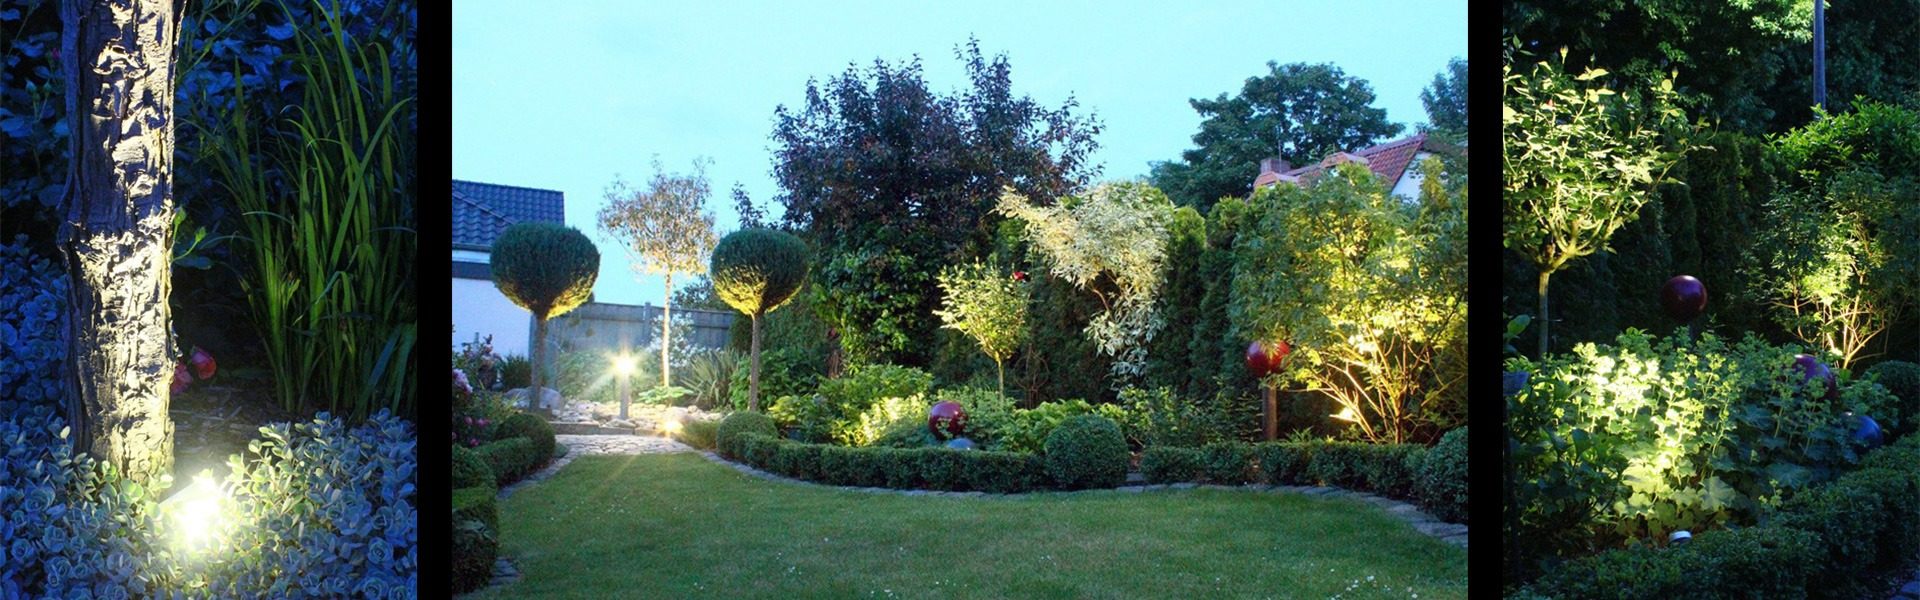 Garten Beleuchtung